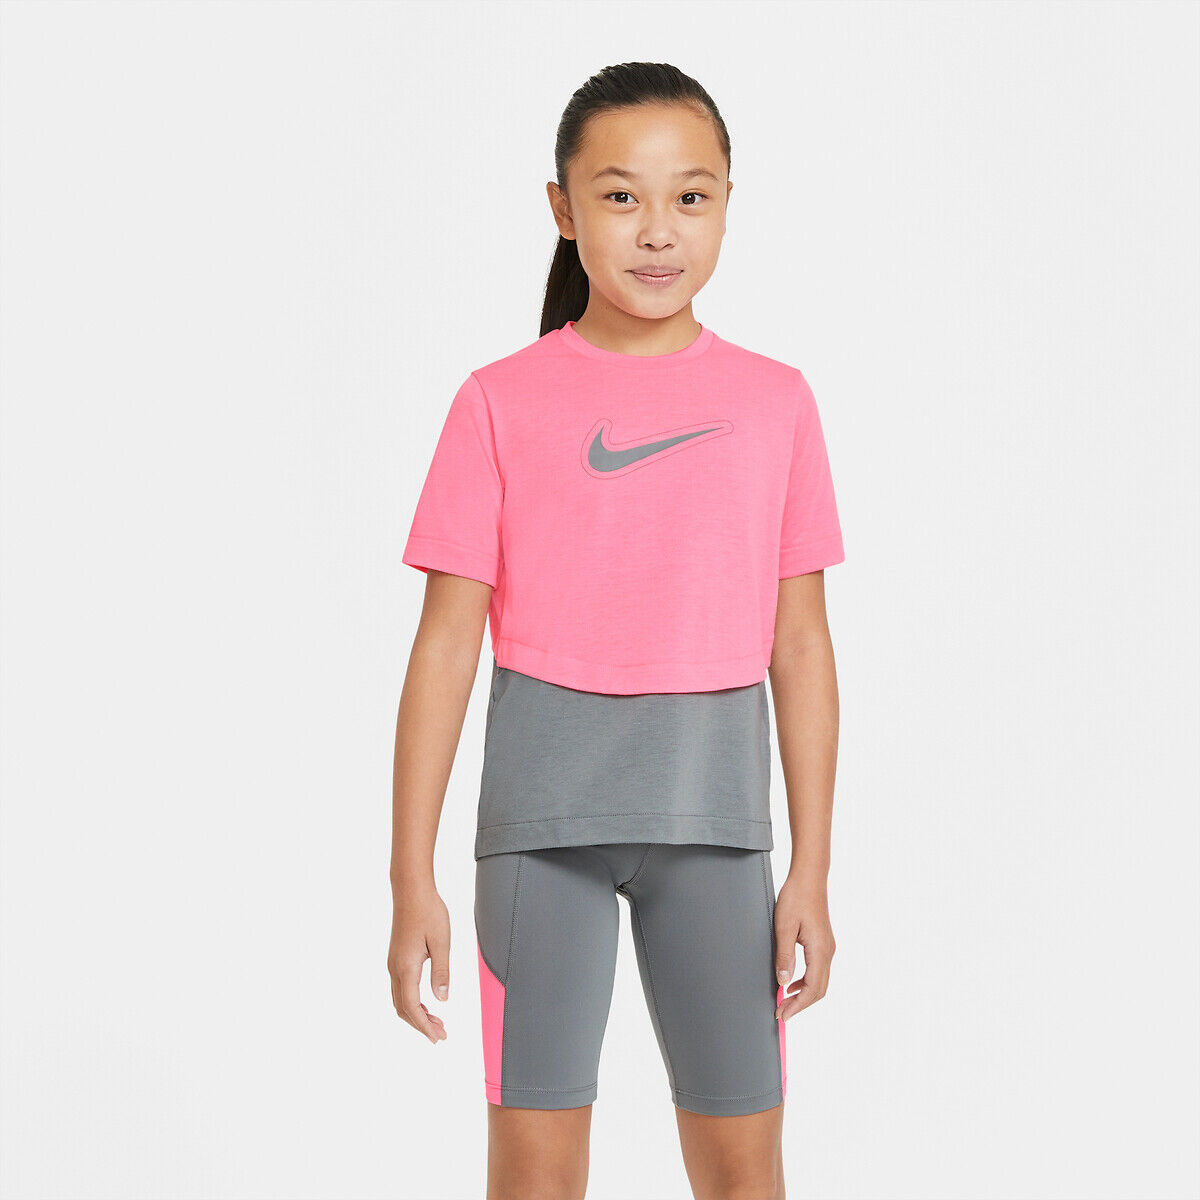 NIKE T-shirt Nike Dri Fit 6 - 16 ans